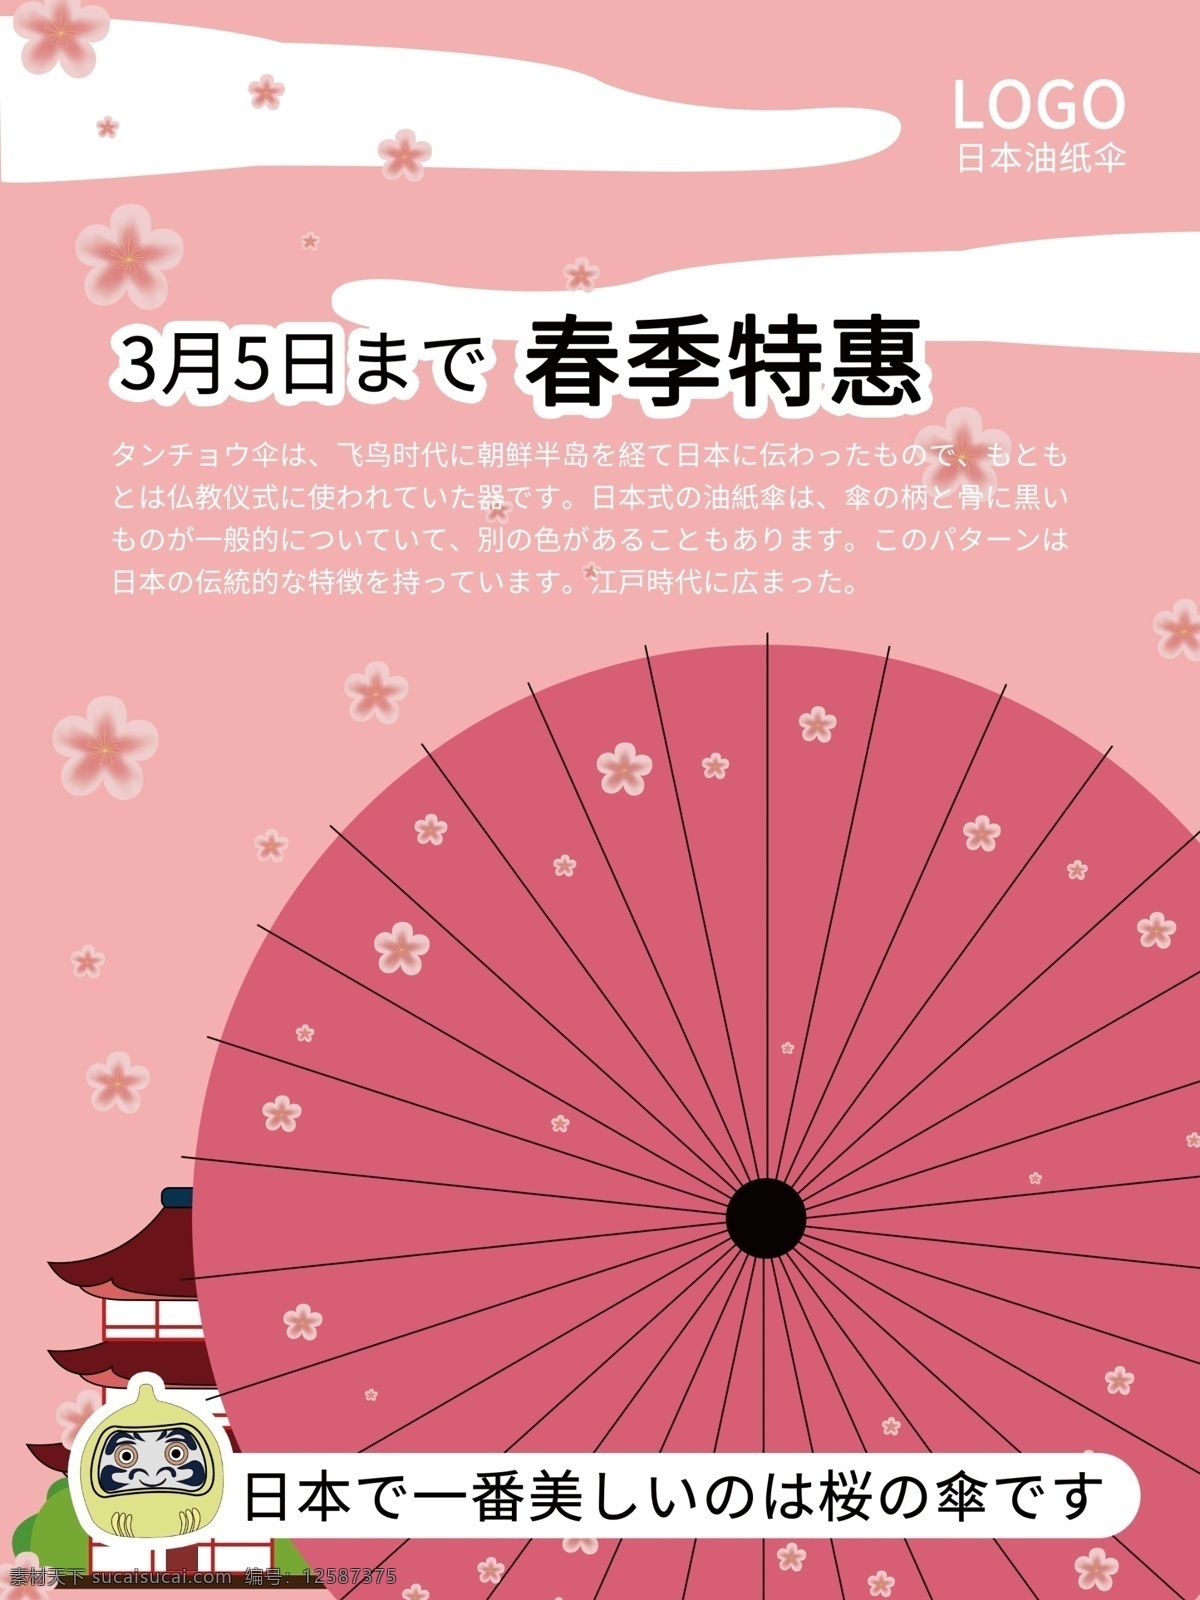 日本 油纸伞 促销 海报 手绘海报 手绘 手绘促销海报 粉色 招财猫